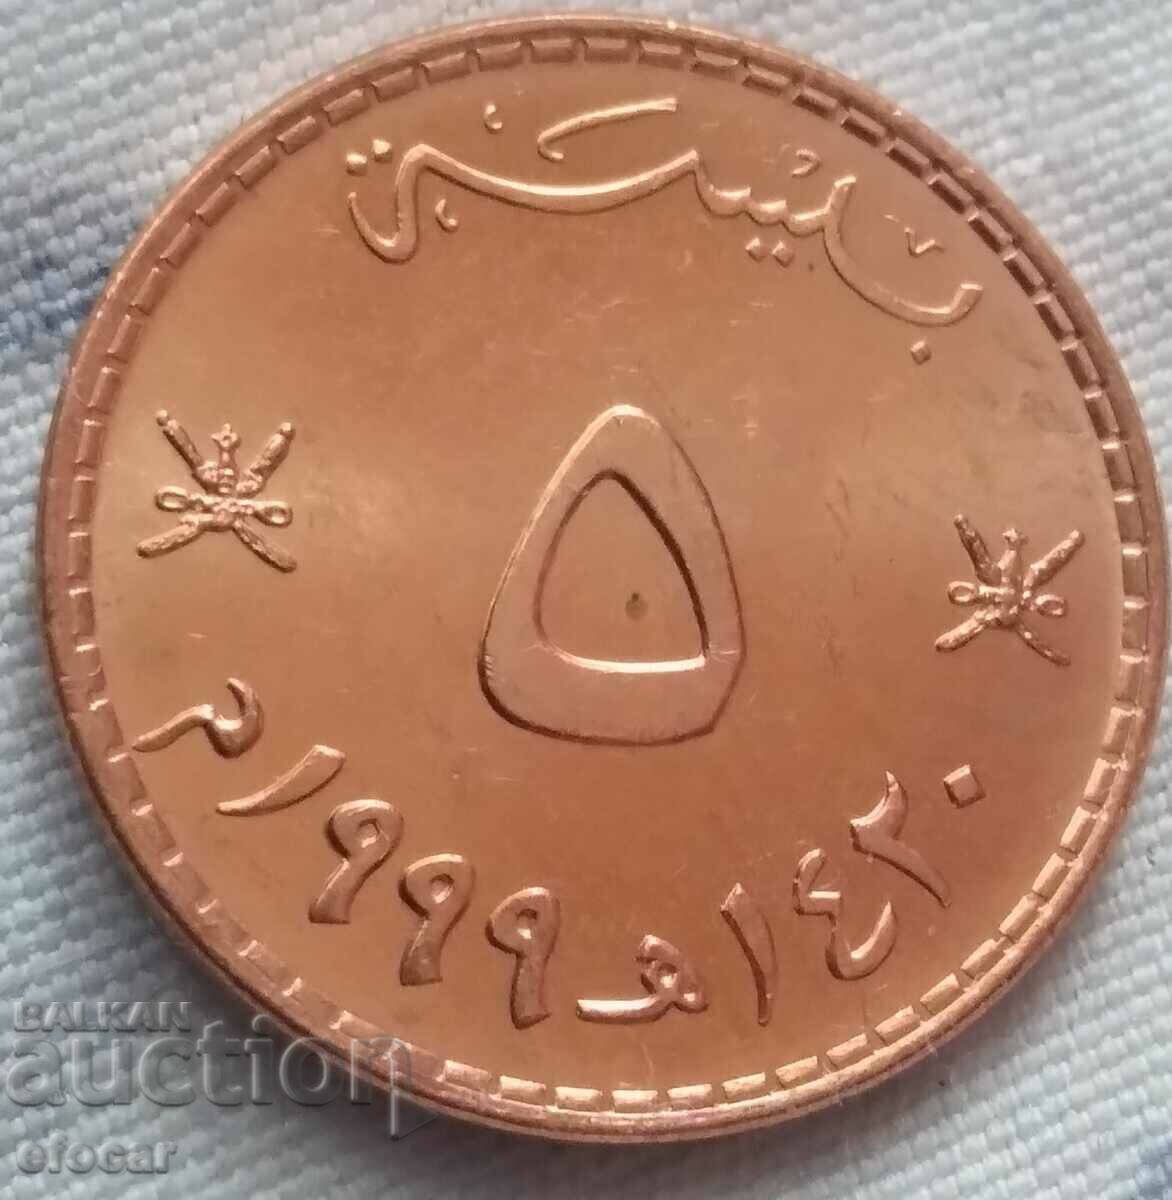 5 piastres Oman 1999